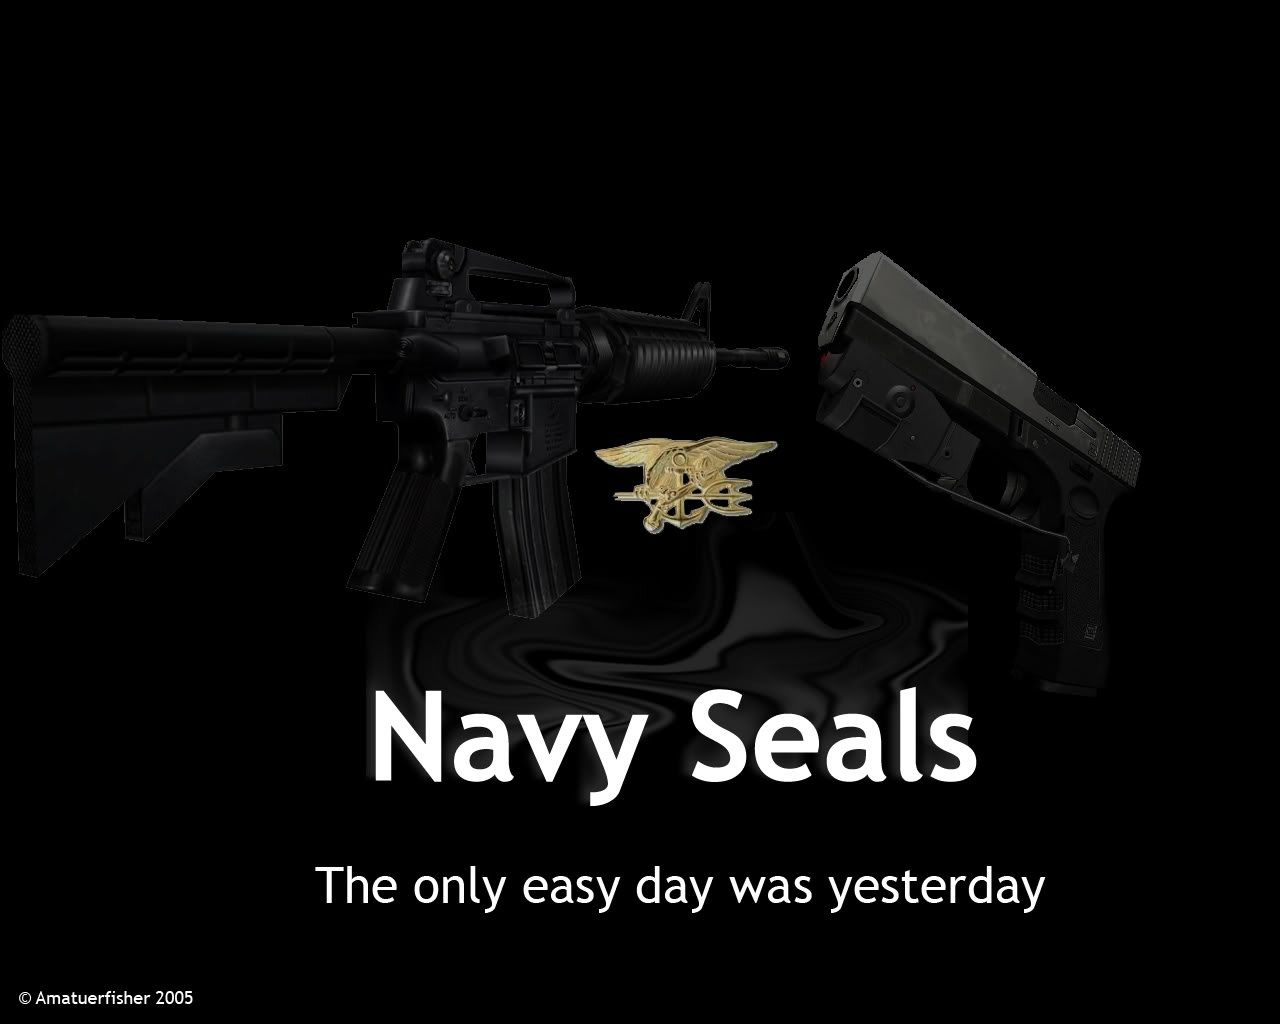 30+] Wallpaper Navy Seal - WallpaperSafari